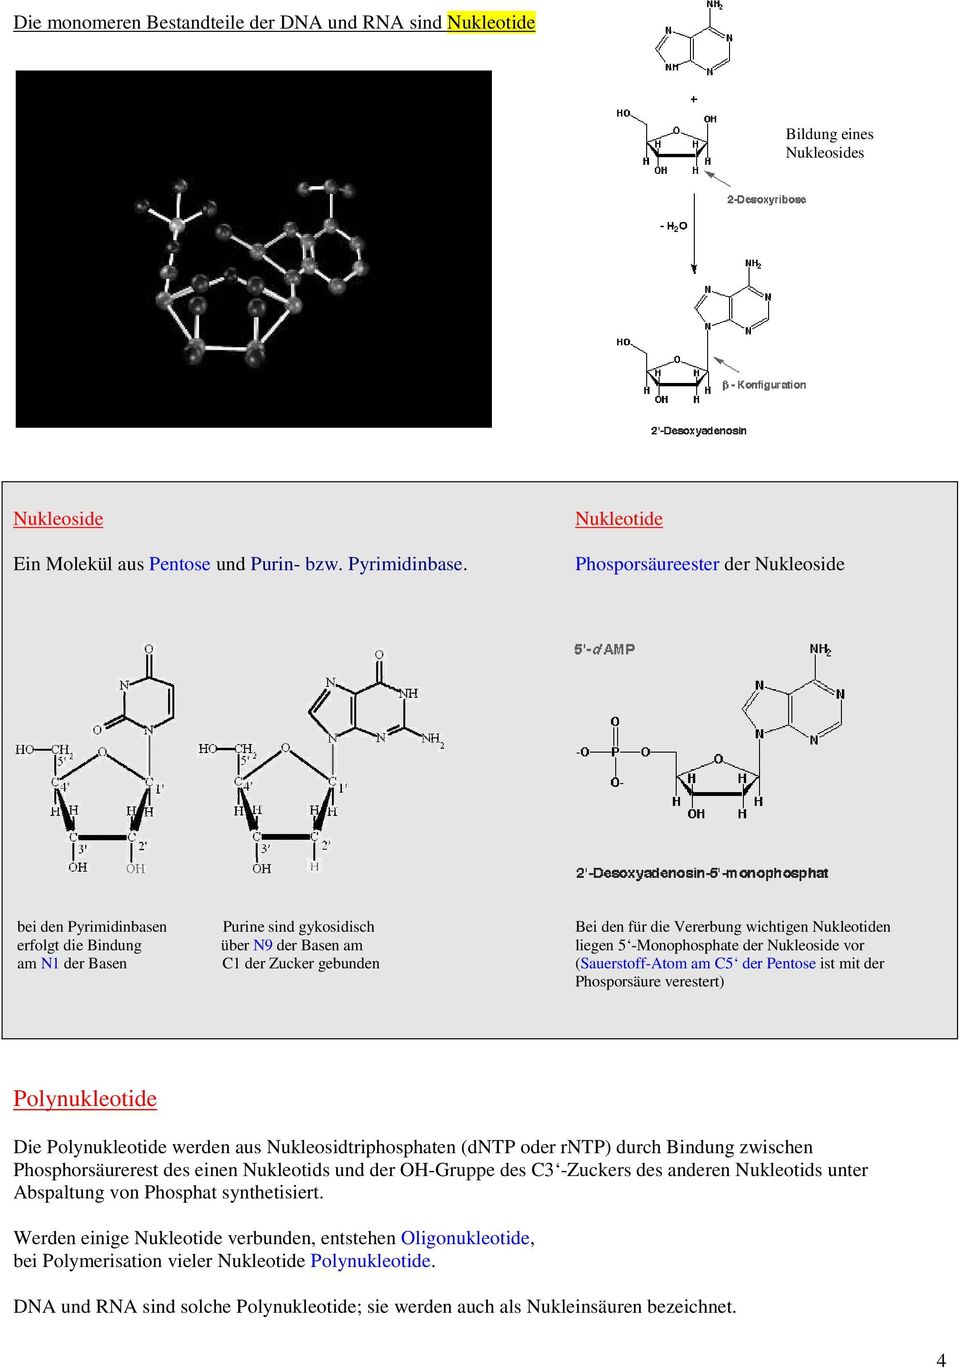 -Monophosphate der Nukleoside vor am N1 der Basen C1 der Zucker gebunden (Sauerstoff-Atom am C5 der Pentose ist mit der Phosporsäure verestert) Polynukleotide Die Polynukleotide werden aus